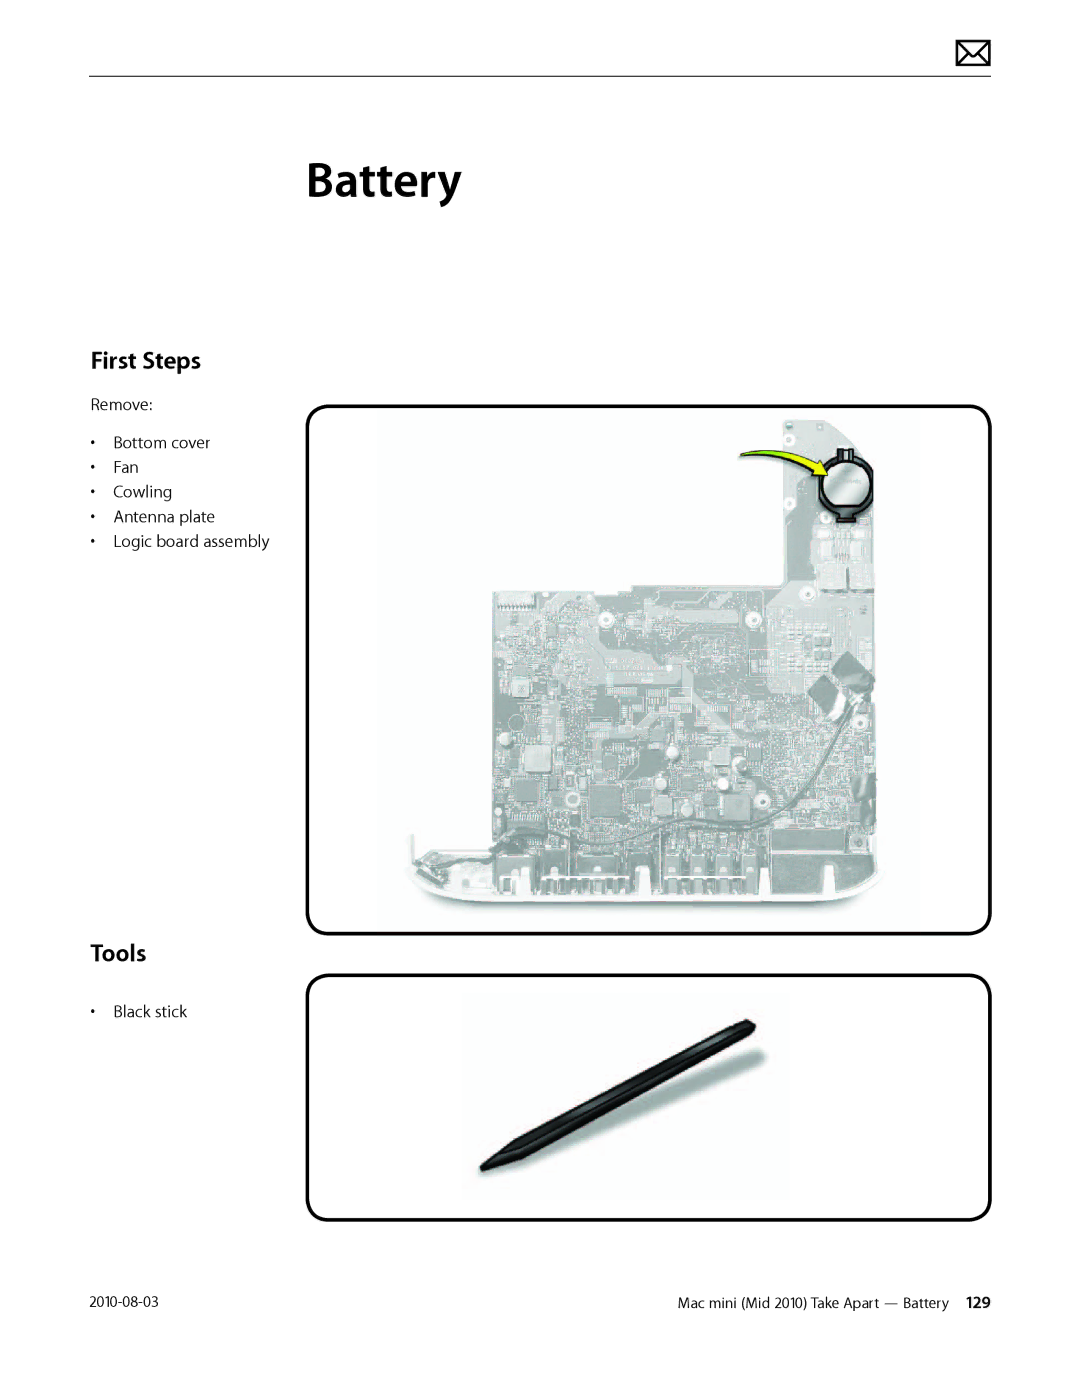 Apple Mac mini manual Battery, First Steps 